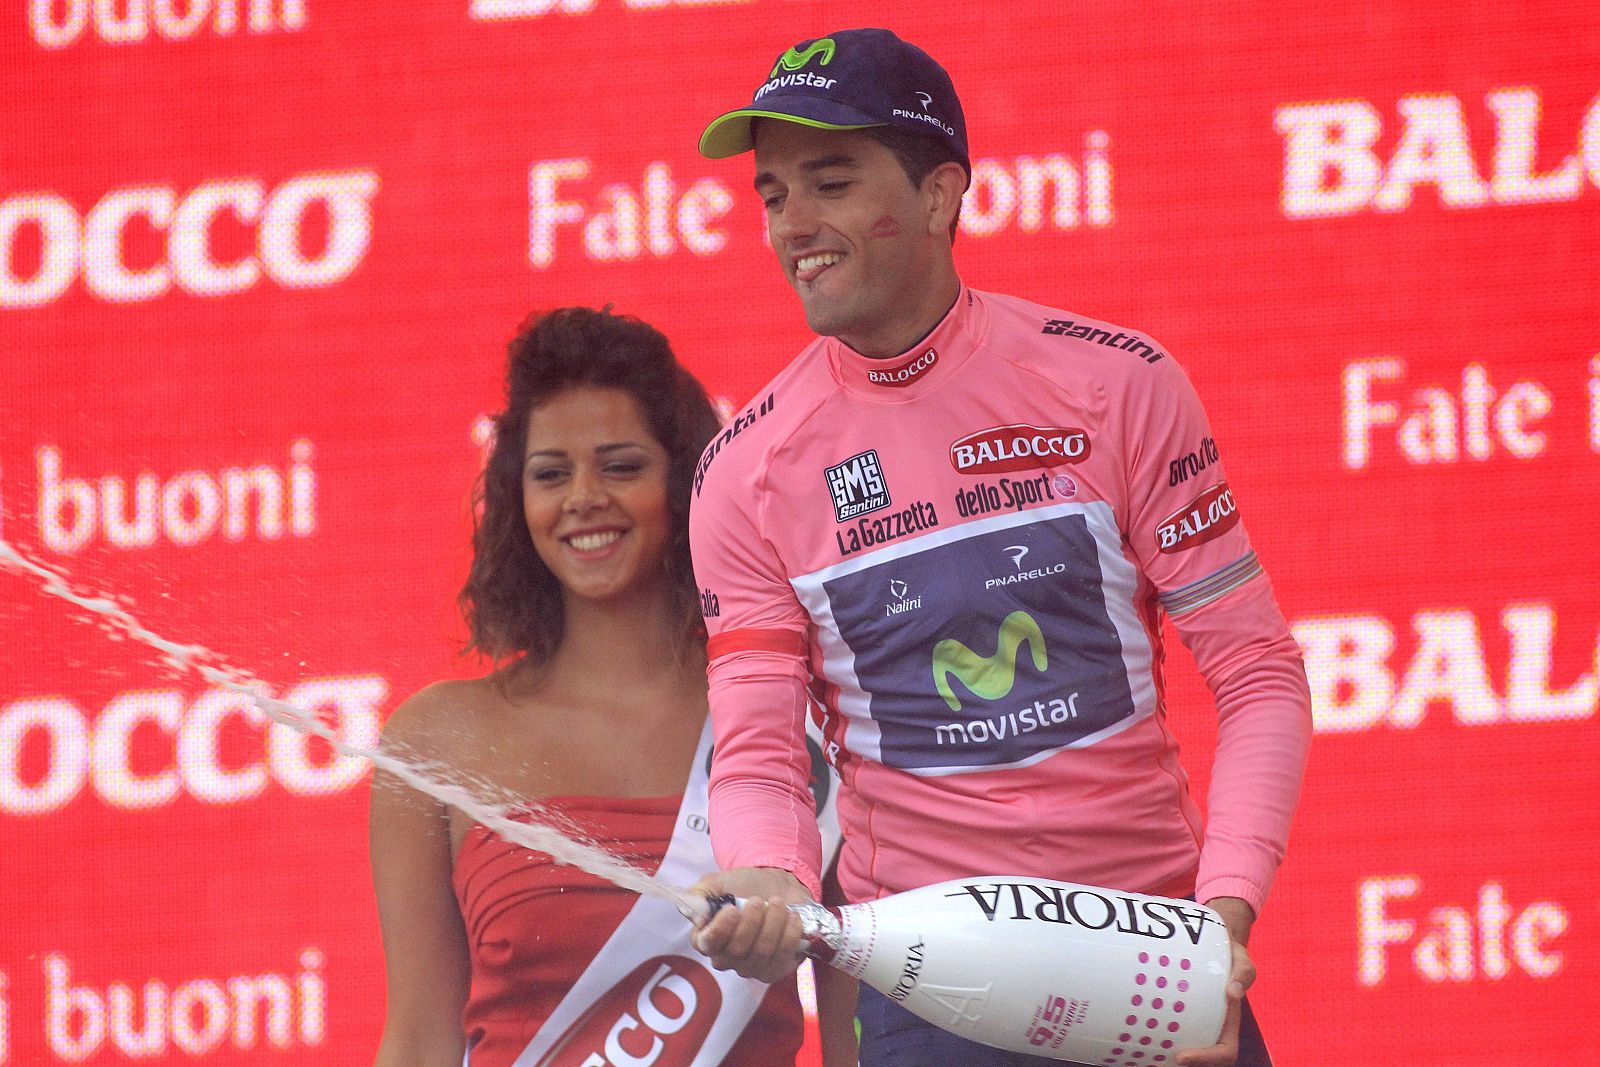 El corredor del Movistar Beñat Intxausti se enfunda en el podio el maillot de líder del Giro.